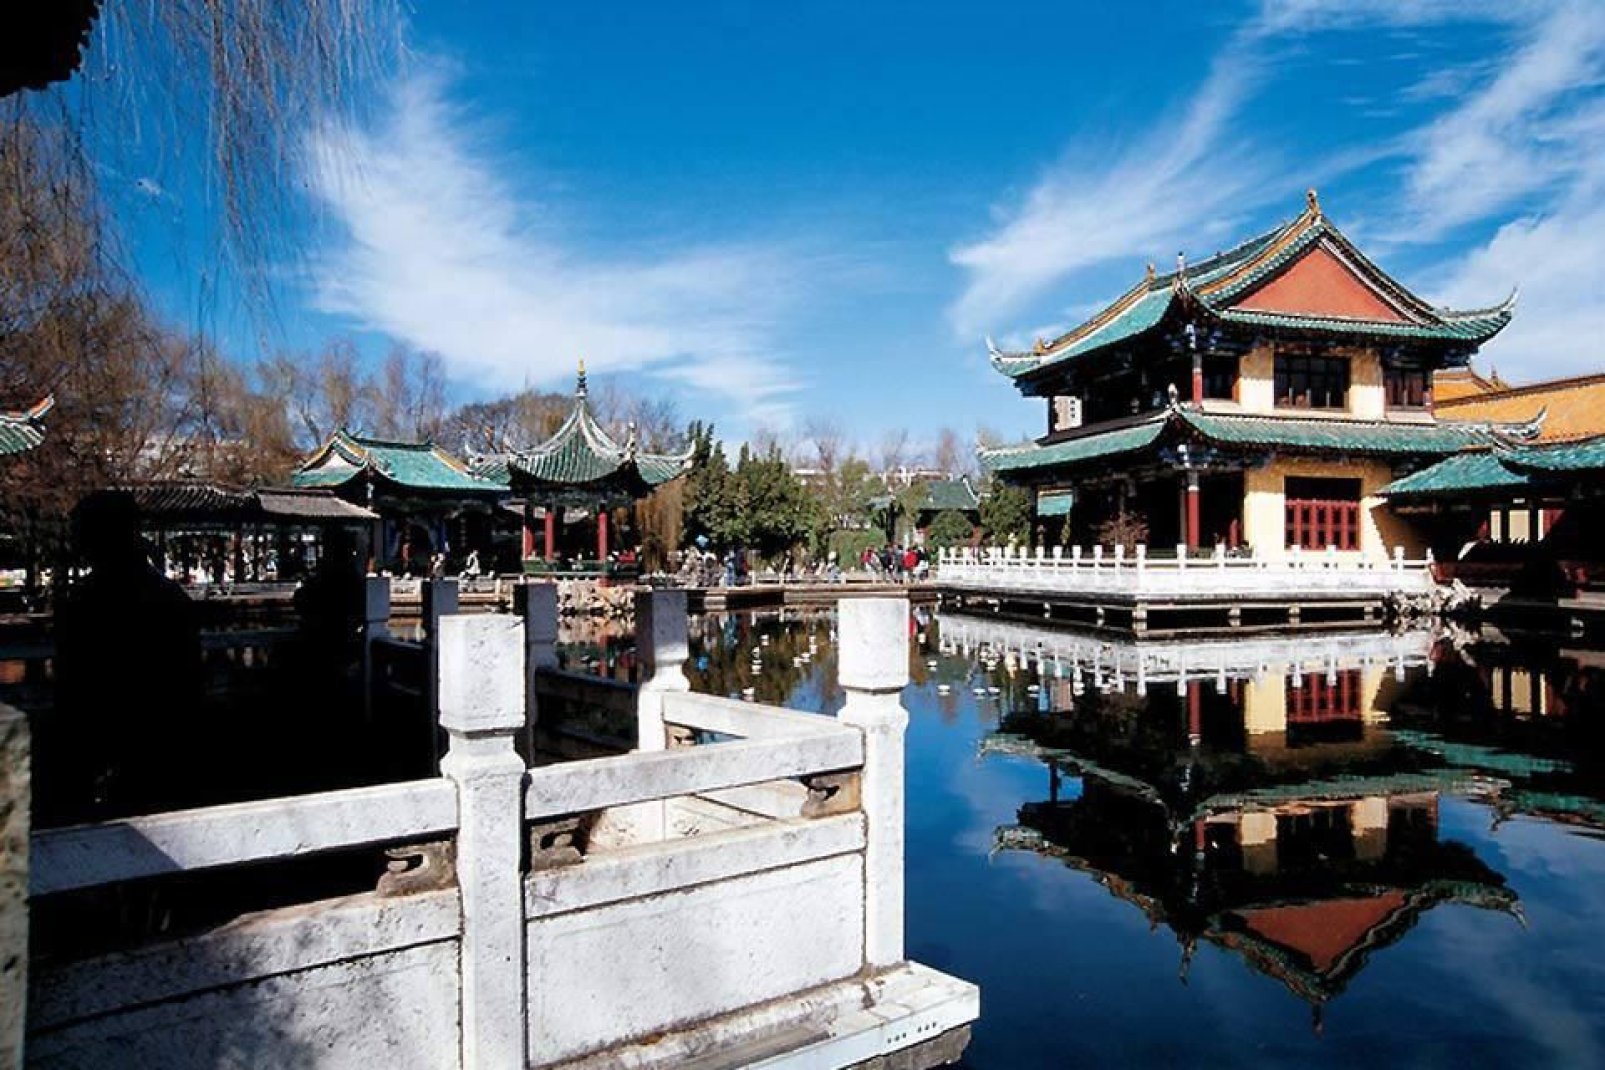 Il tempio Yuantong è il più importante di Kunming. Fu costruito, in parte, tra l'VIII e IX secolo sotto la dinastia Tang.